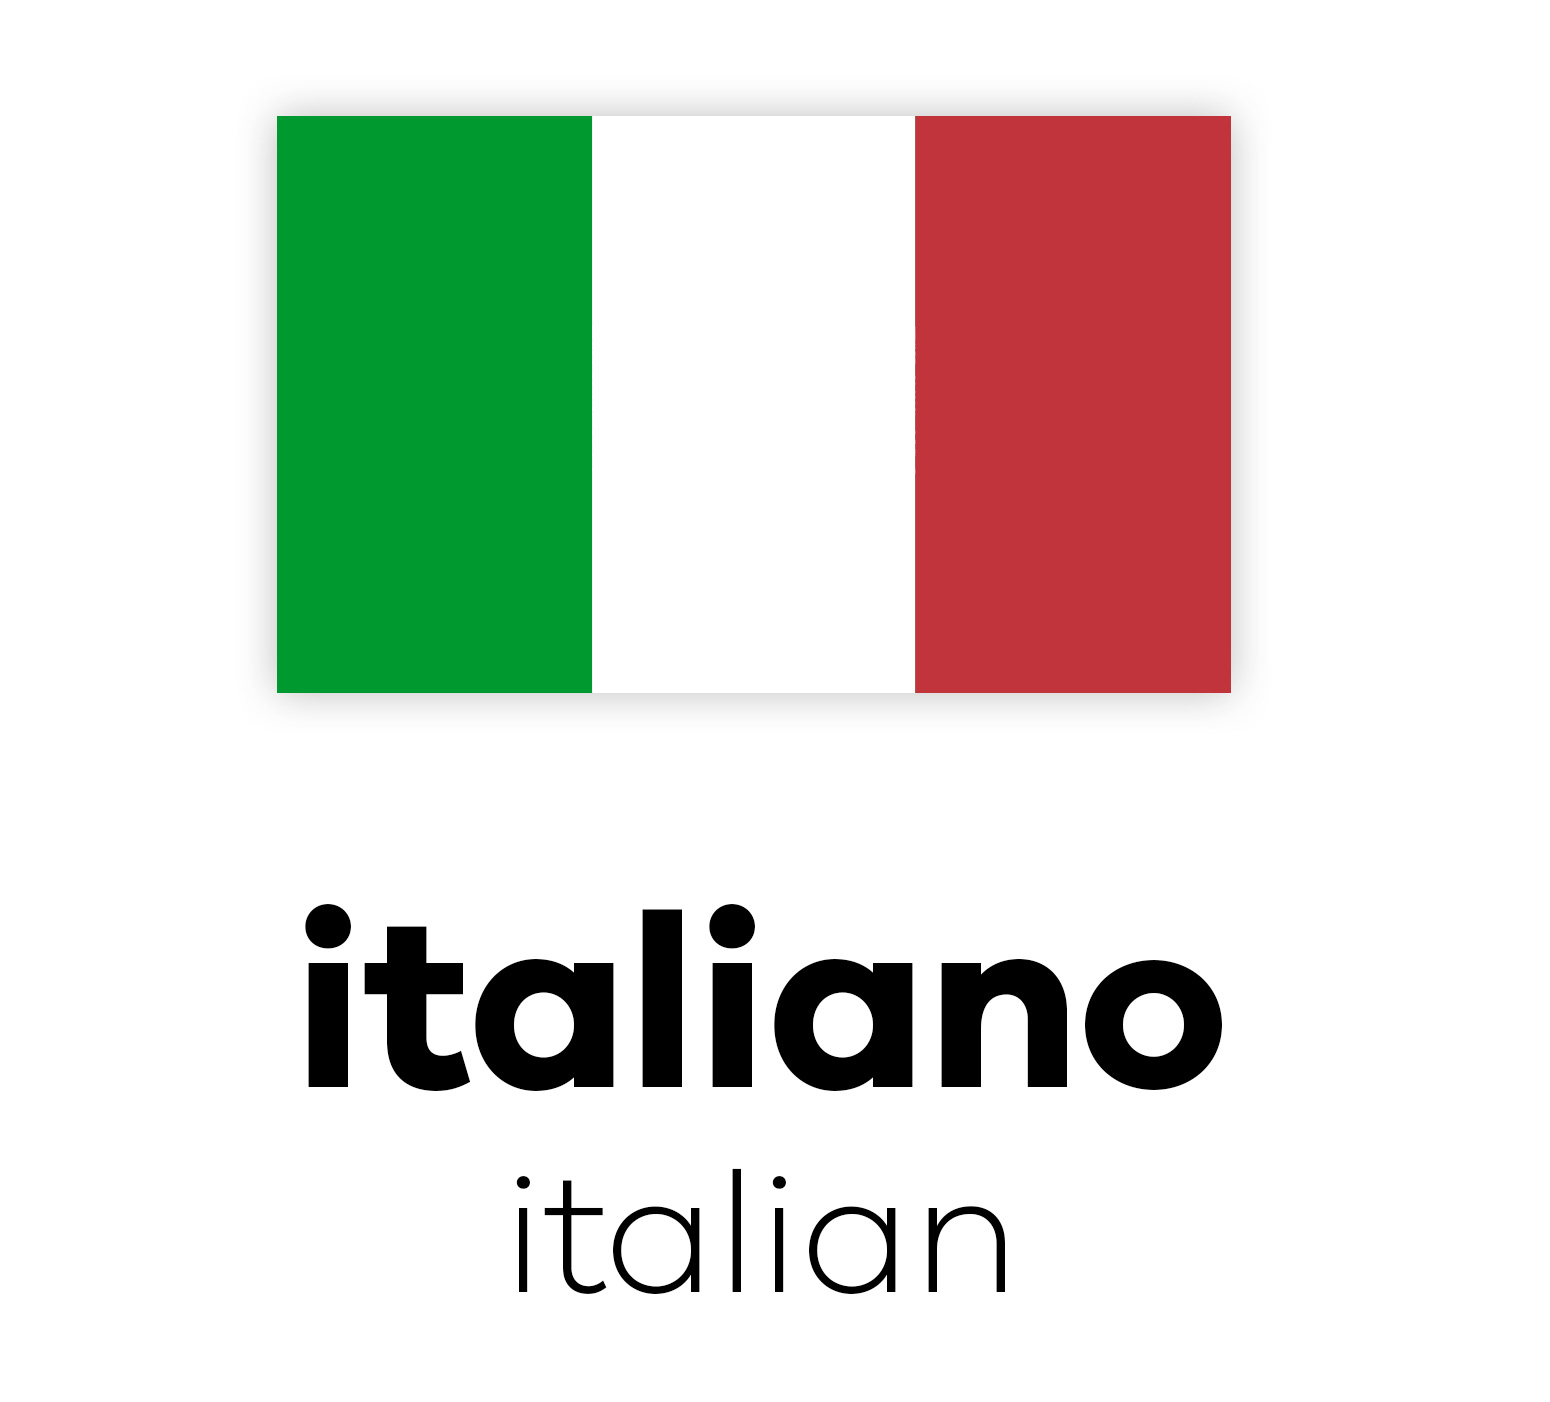 Italienische Flagge mit vertikalen Streifen in Grün, Weiß und Rot über dem Wort "italiano" in Schwarz, darunter "italian" in Schwarz.